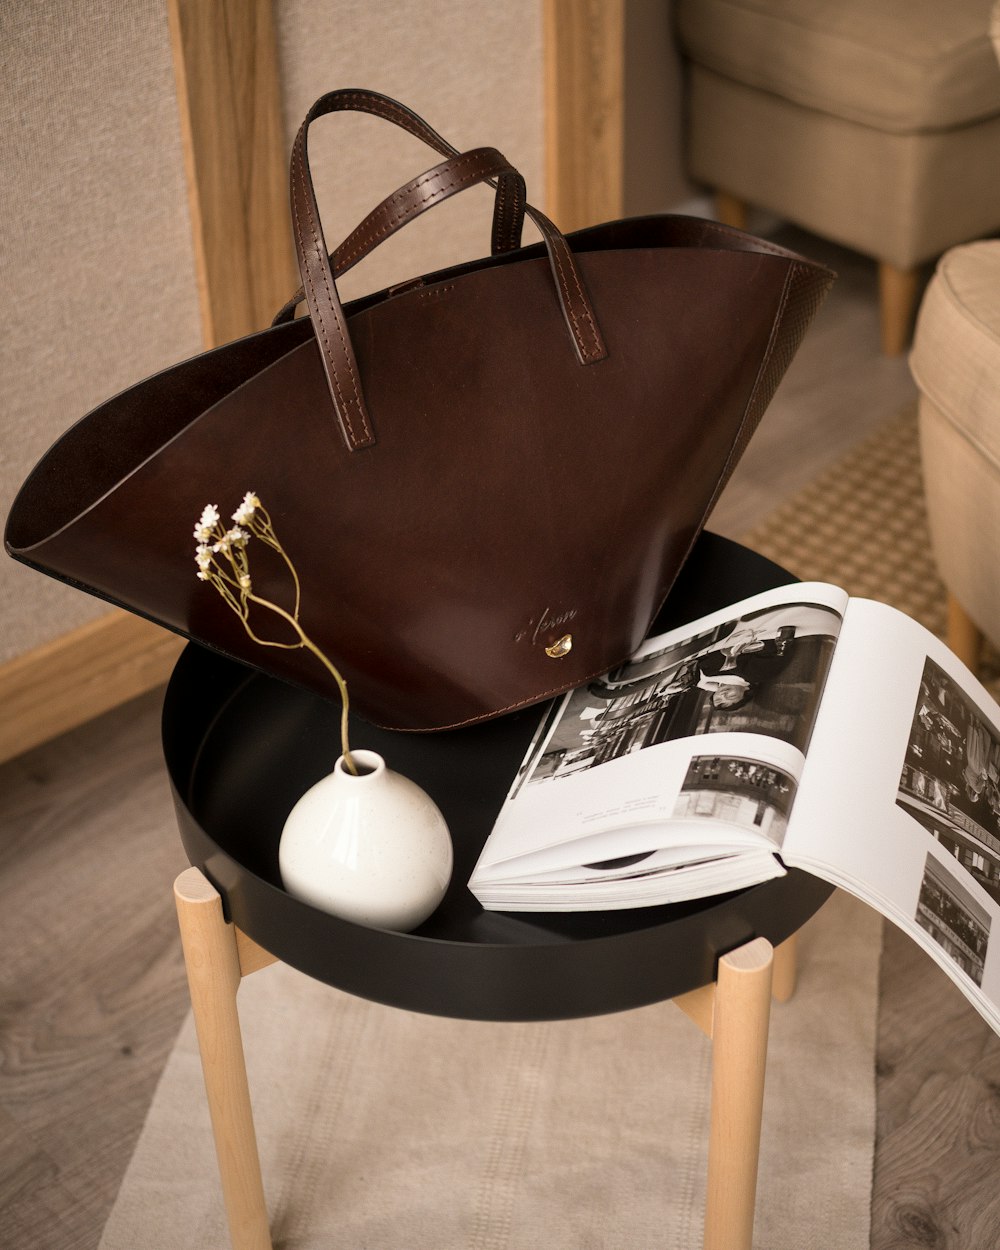 Un bolso marrón sentado encima de una mesa junto a un libro abierto